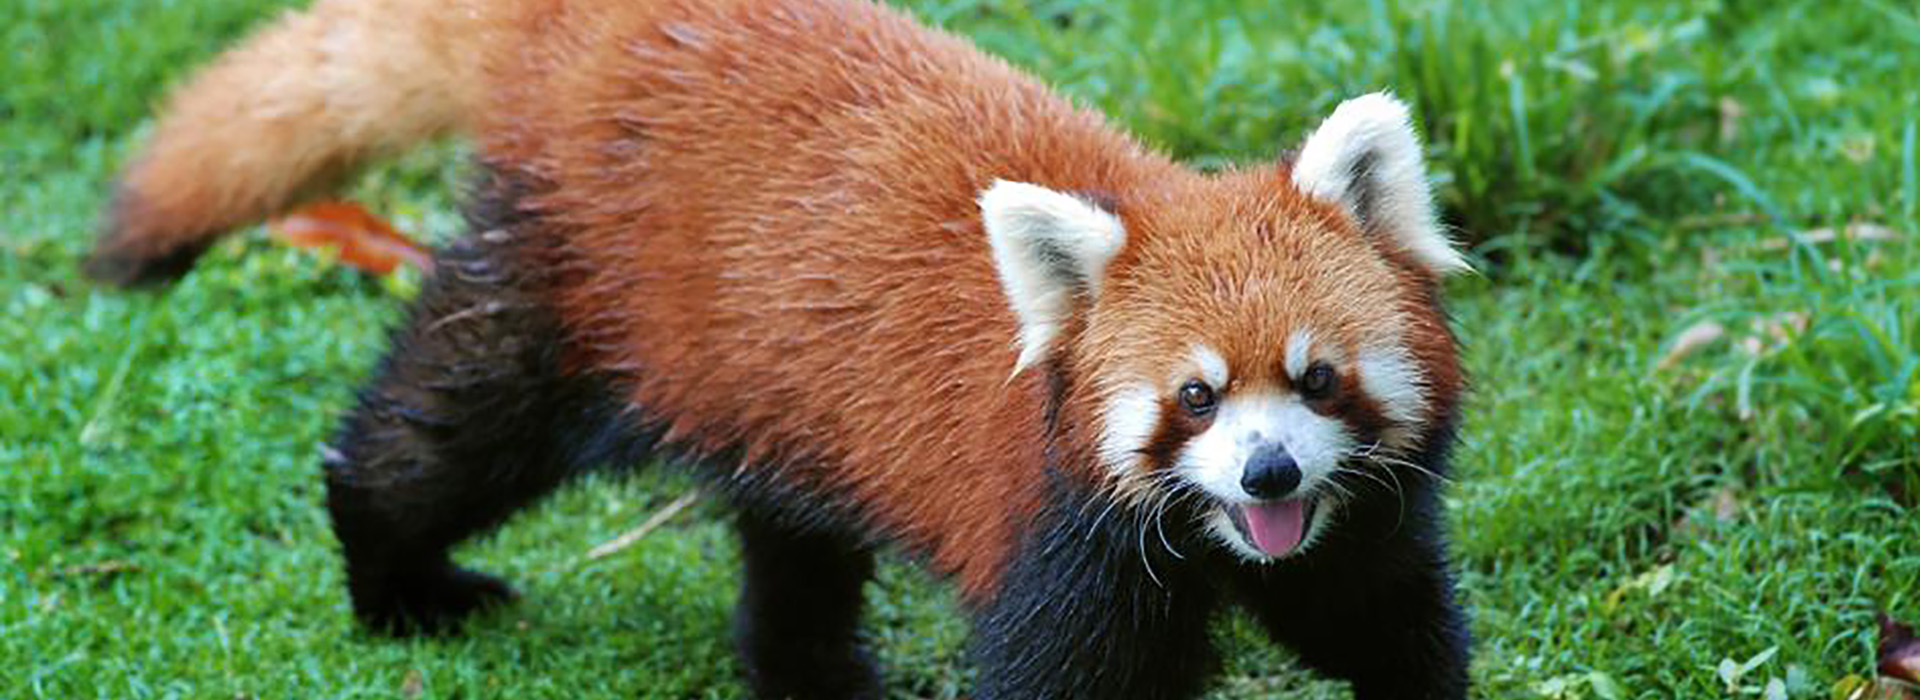 Red panda mobile